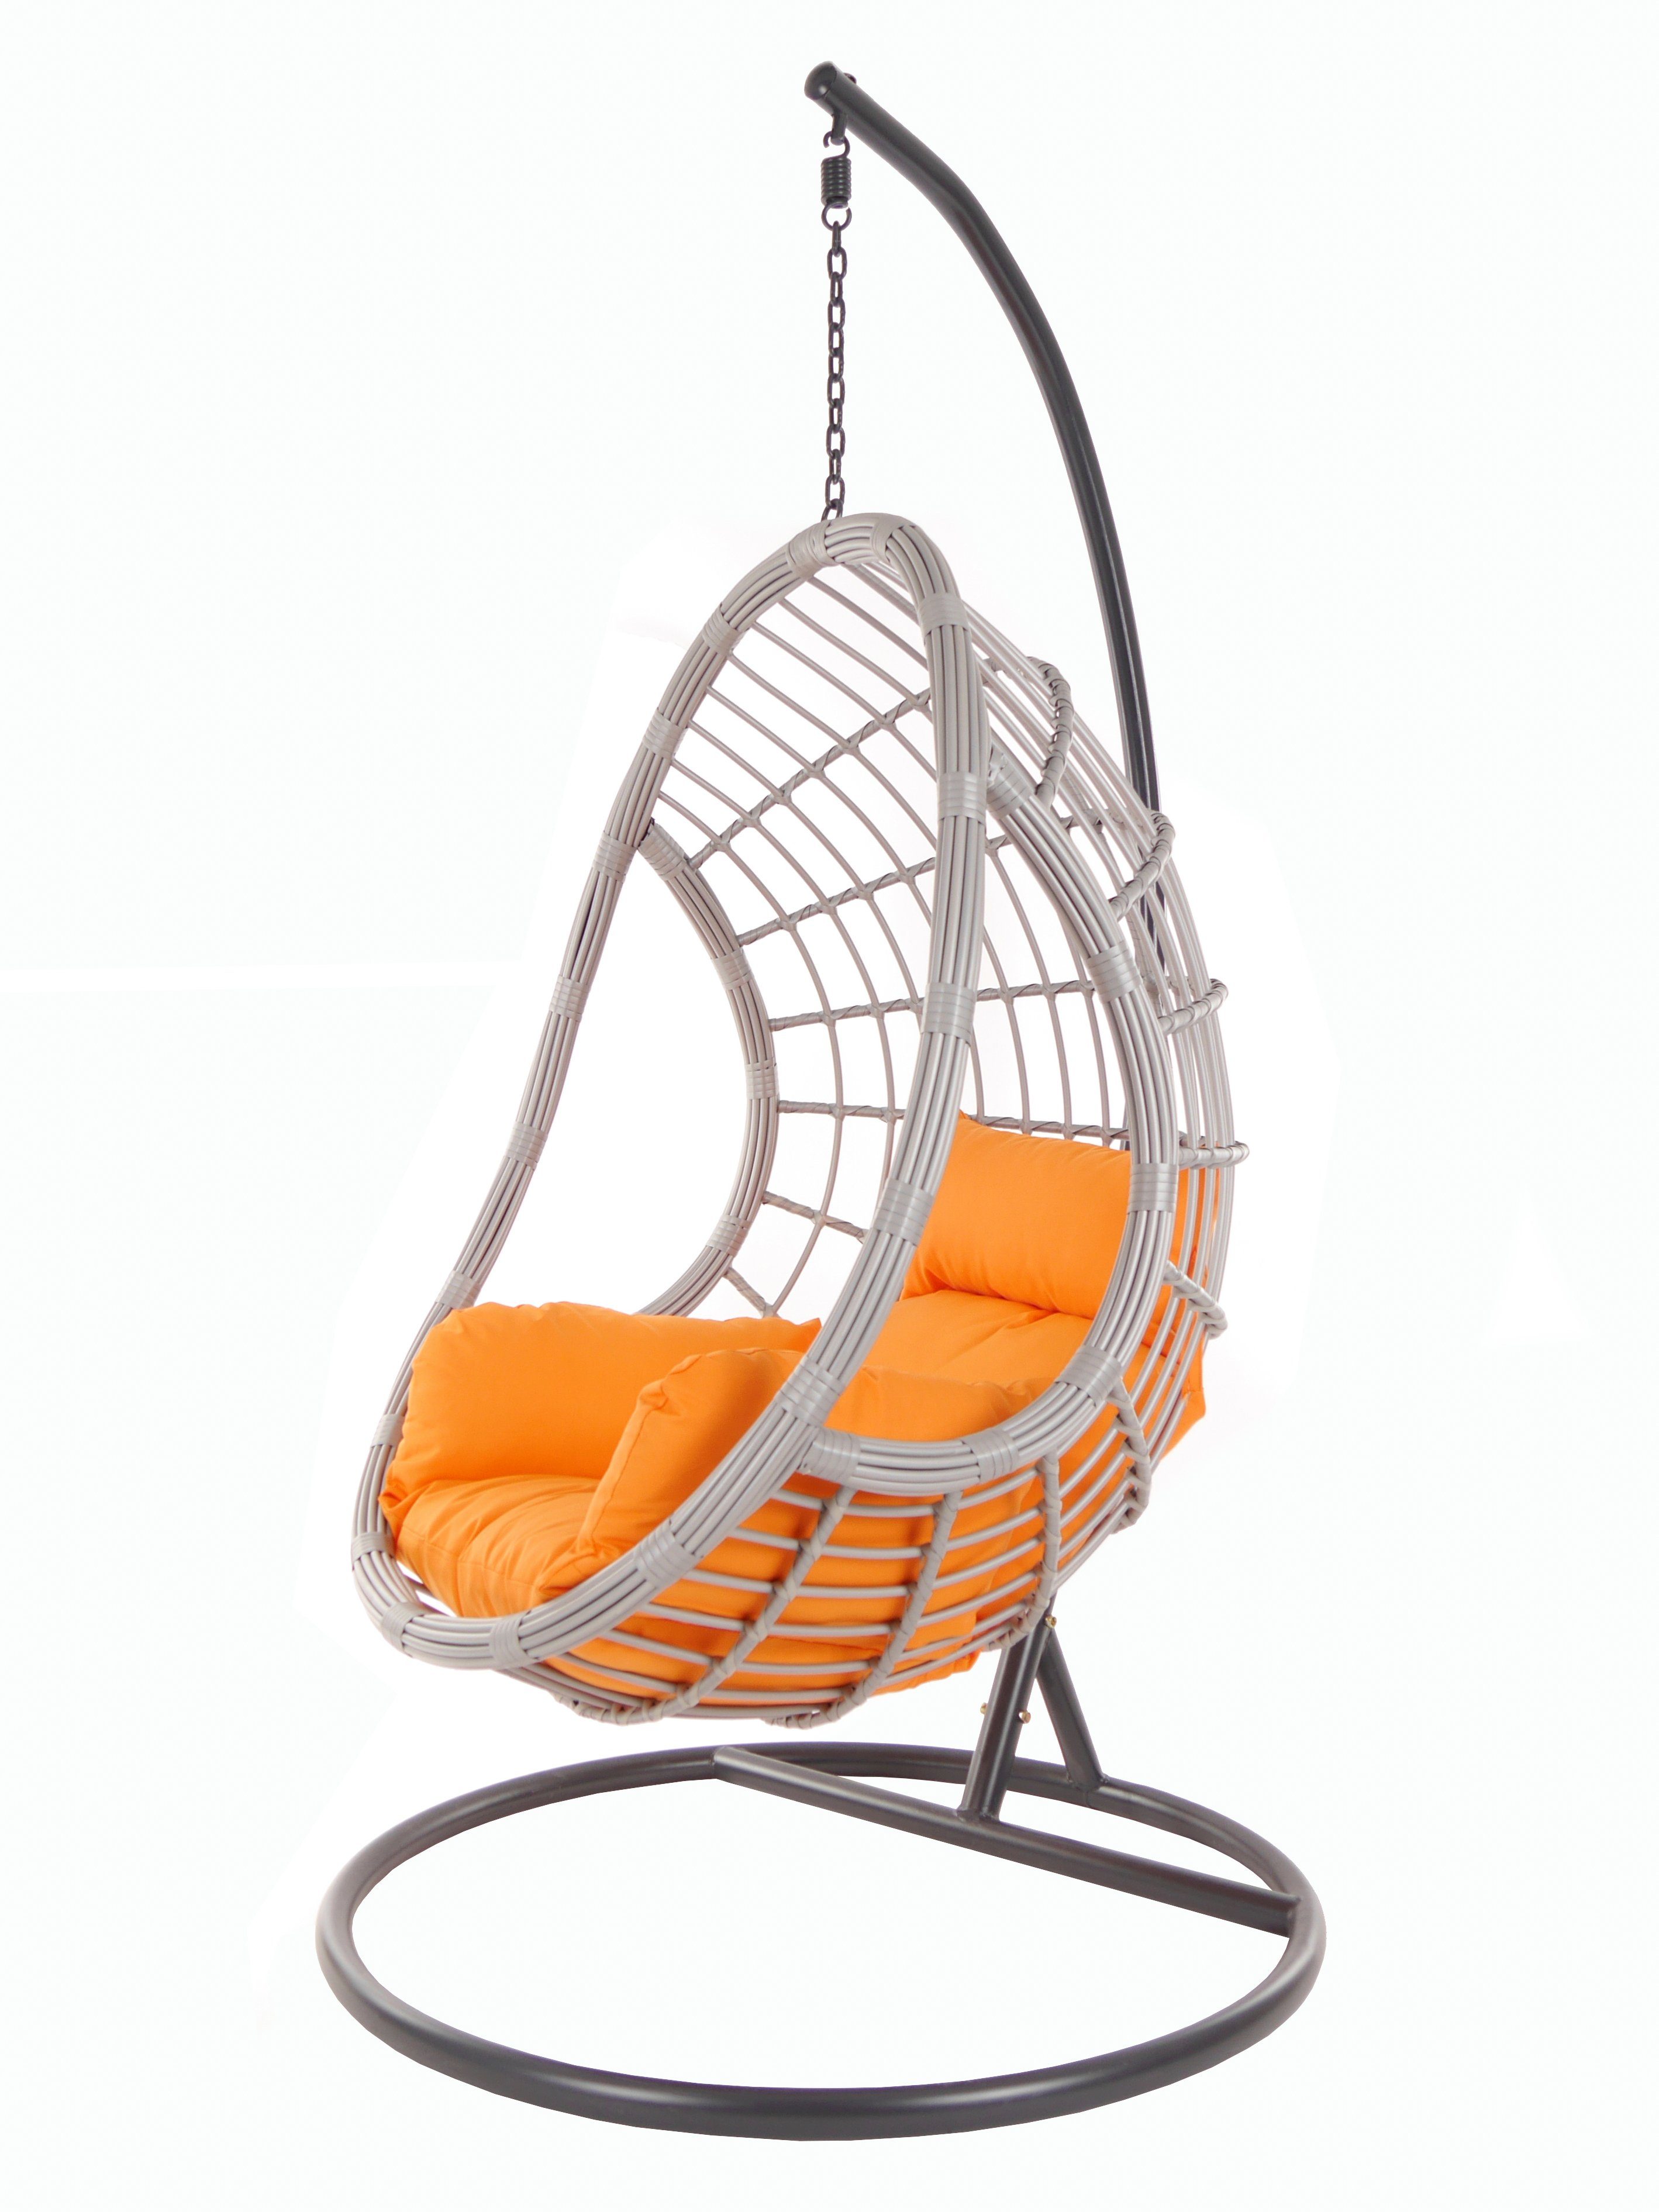 KIDEO Hängesessel PALMANOVA lightgrey, Schwebesessel mit Gestell und Kissen, Swing Chair, Loungemöbel orange (3030 tangerine)